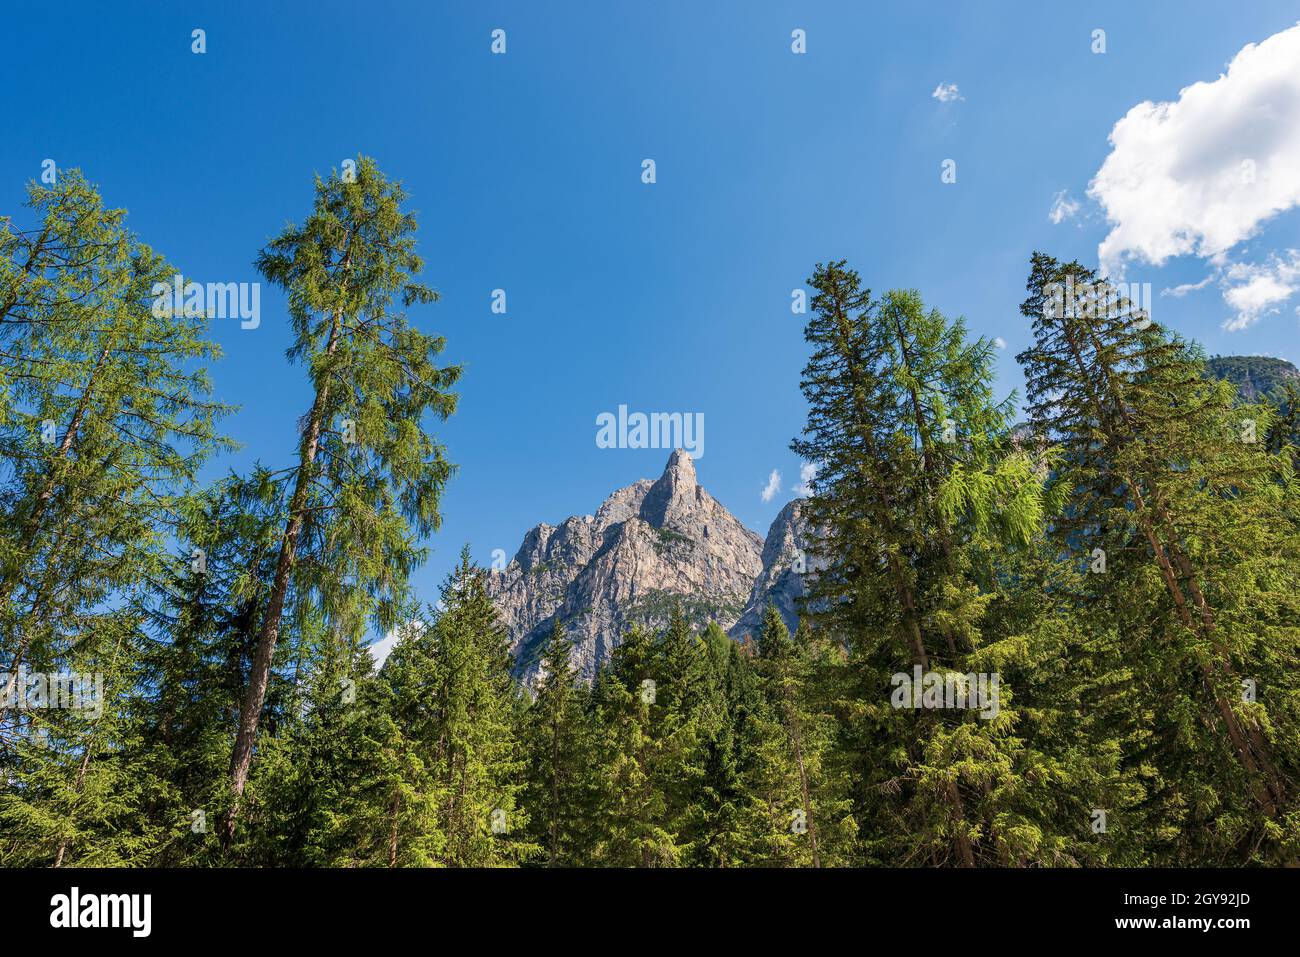 Berggipfel Dolomiten (Massiv Sasso del Signore) und Pinienwald. Pragser Wildsee oder Pragser See, Italienische Alpen, Trentino, Italien. Stockfoto